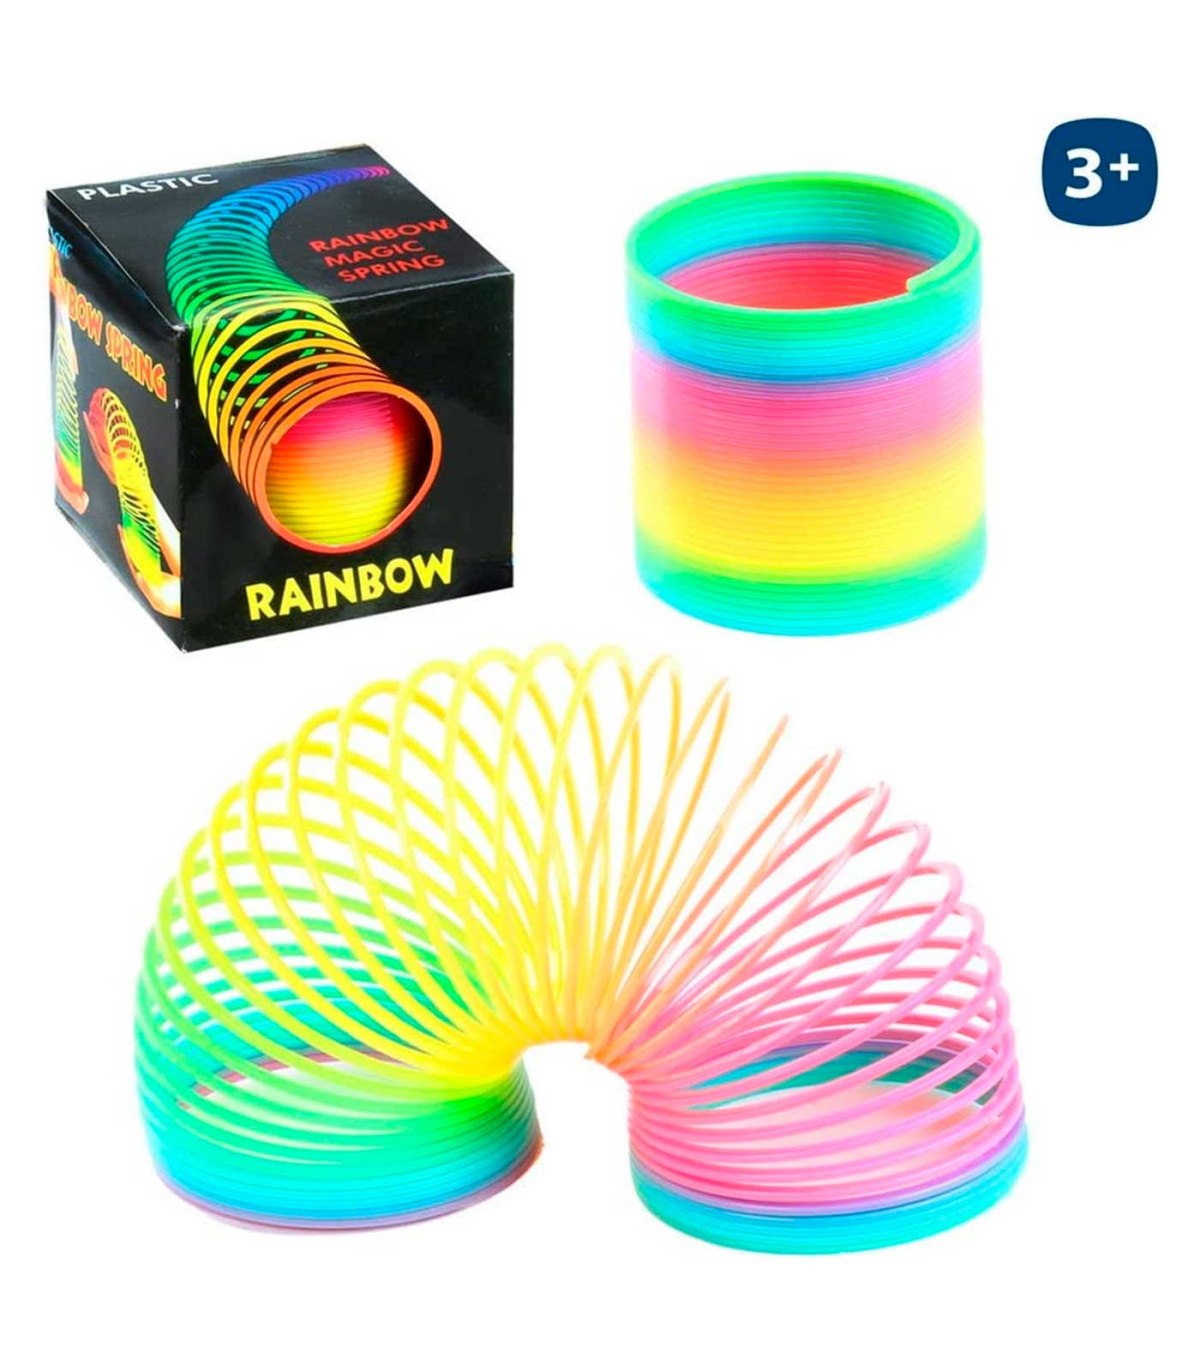 Tradineur - Pack de 3 muelles elásticos de juguete, multicolor, plástico,  arco iris, resortes mágicos, regalo de fiesta, niños